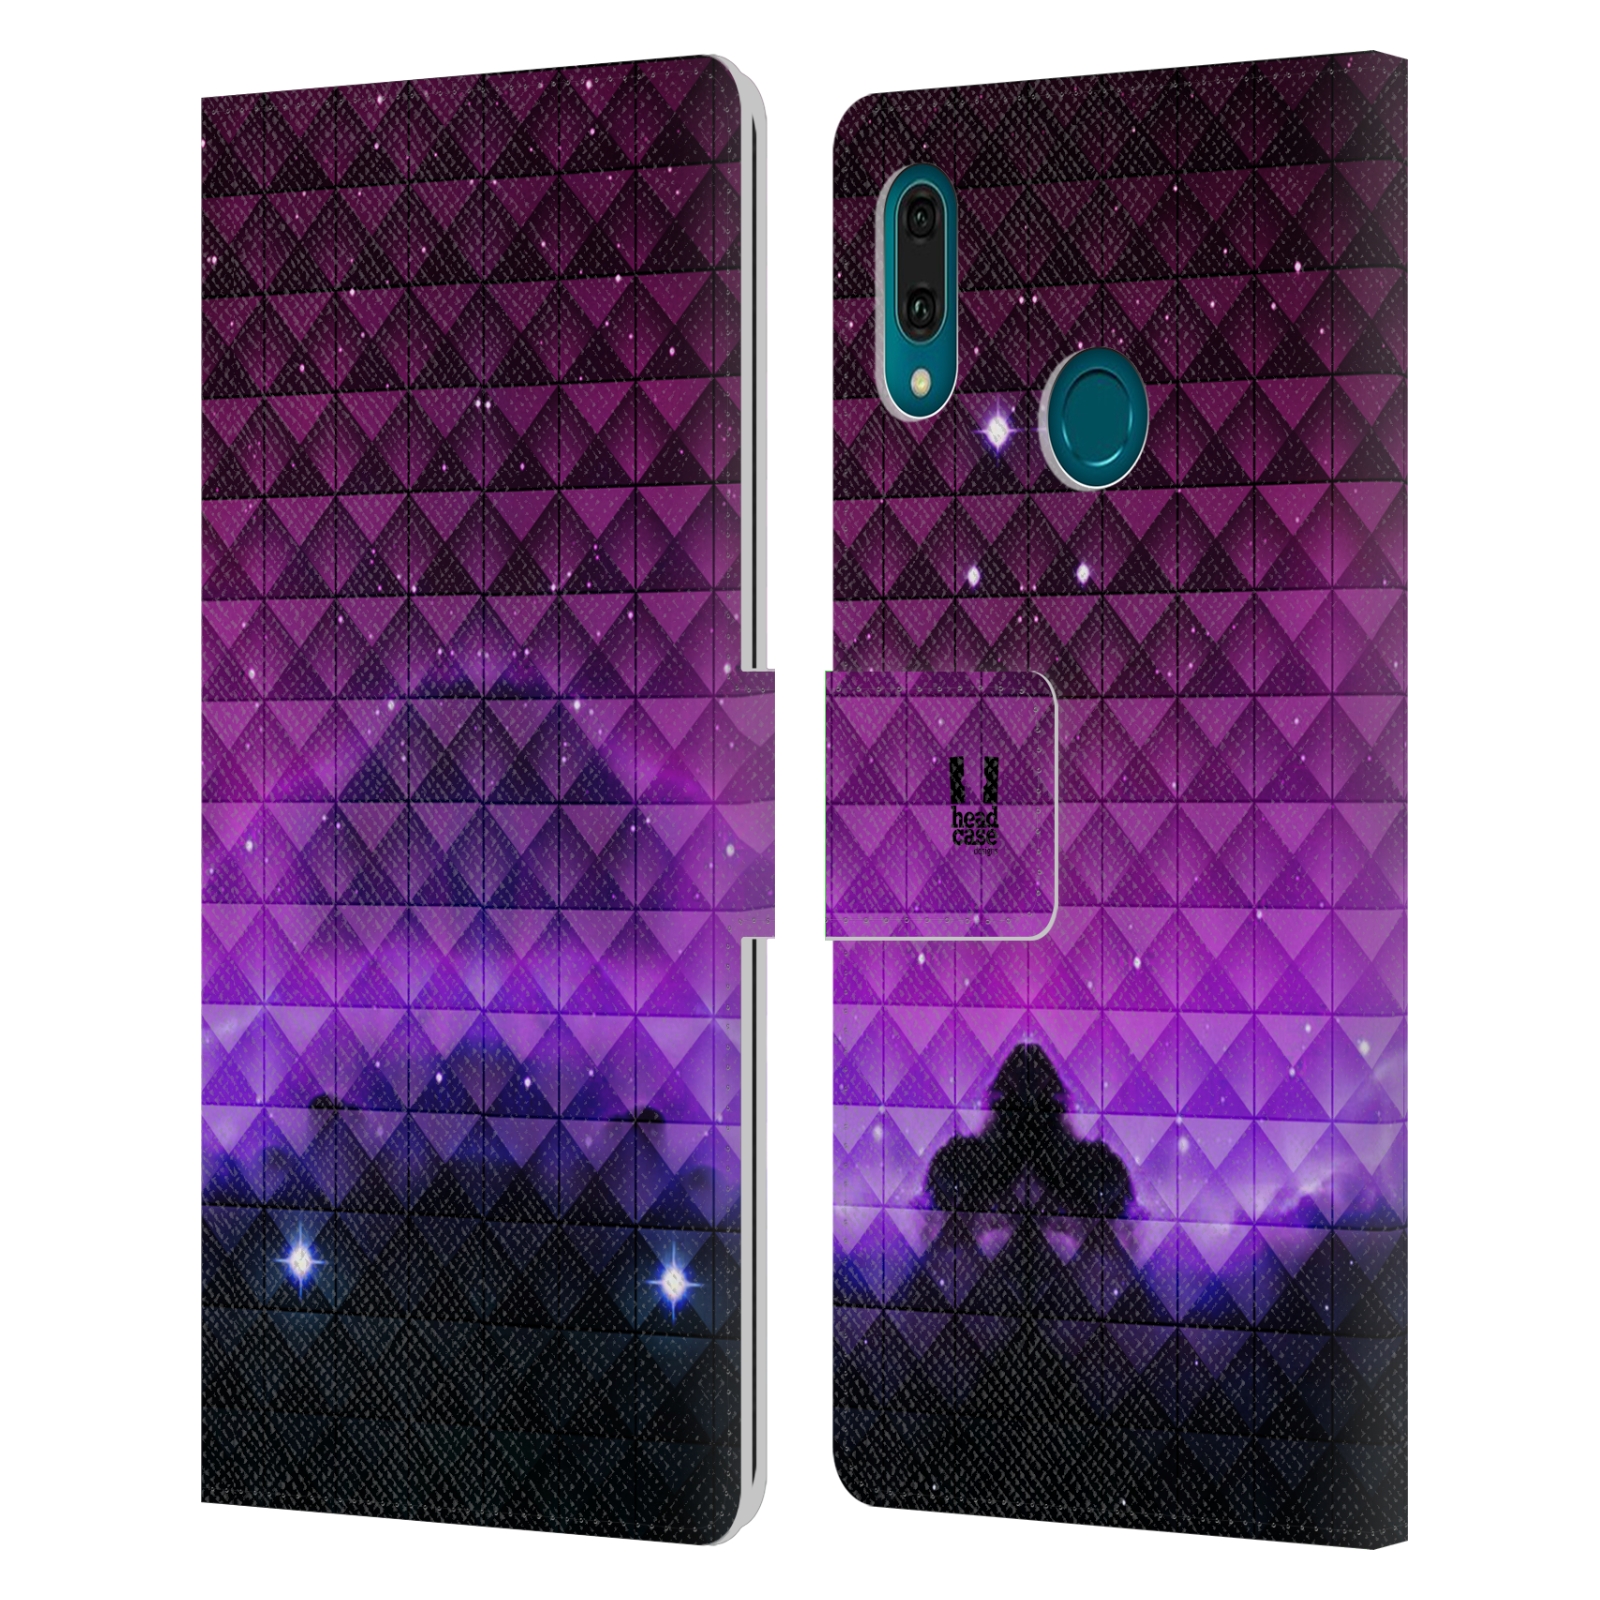 Pouzdro na mobil Huawei Y9 2019 barevná vesmírná mlhovina fialová a černá